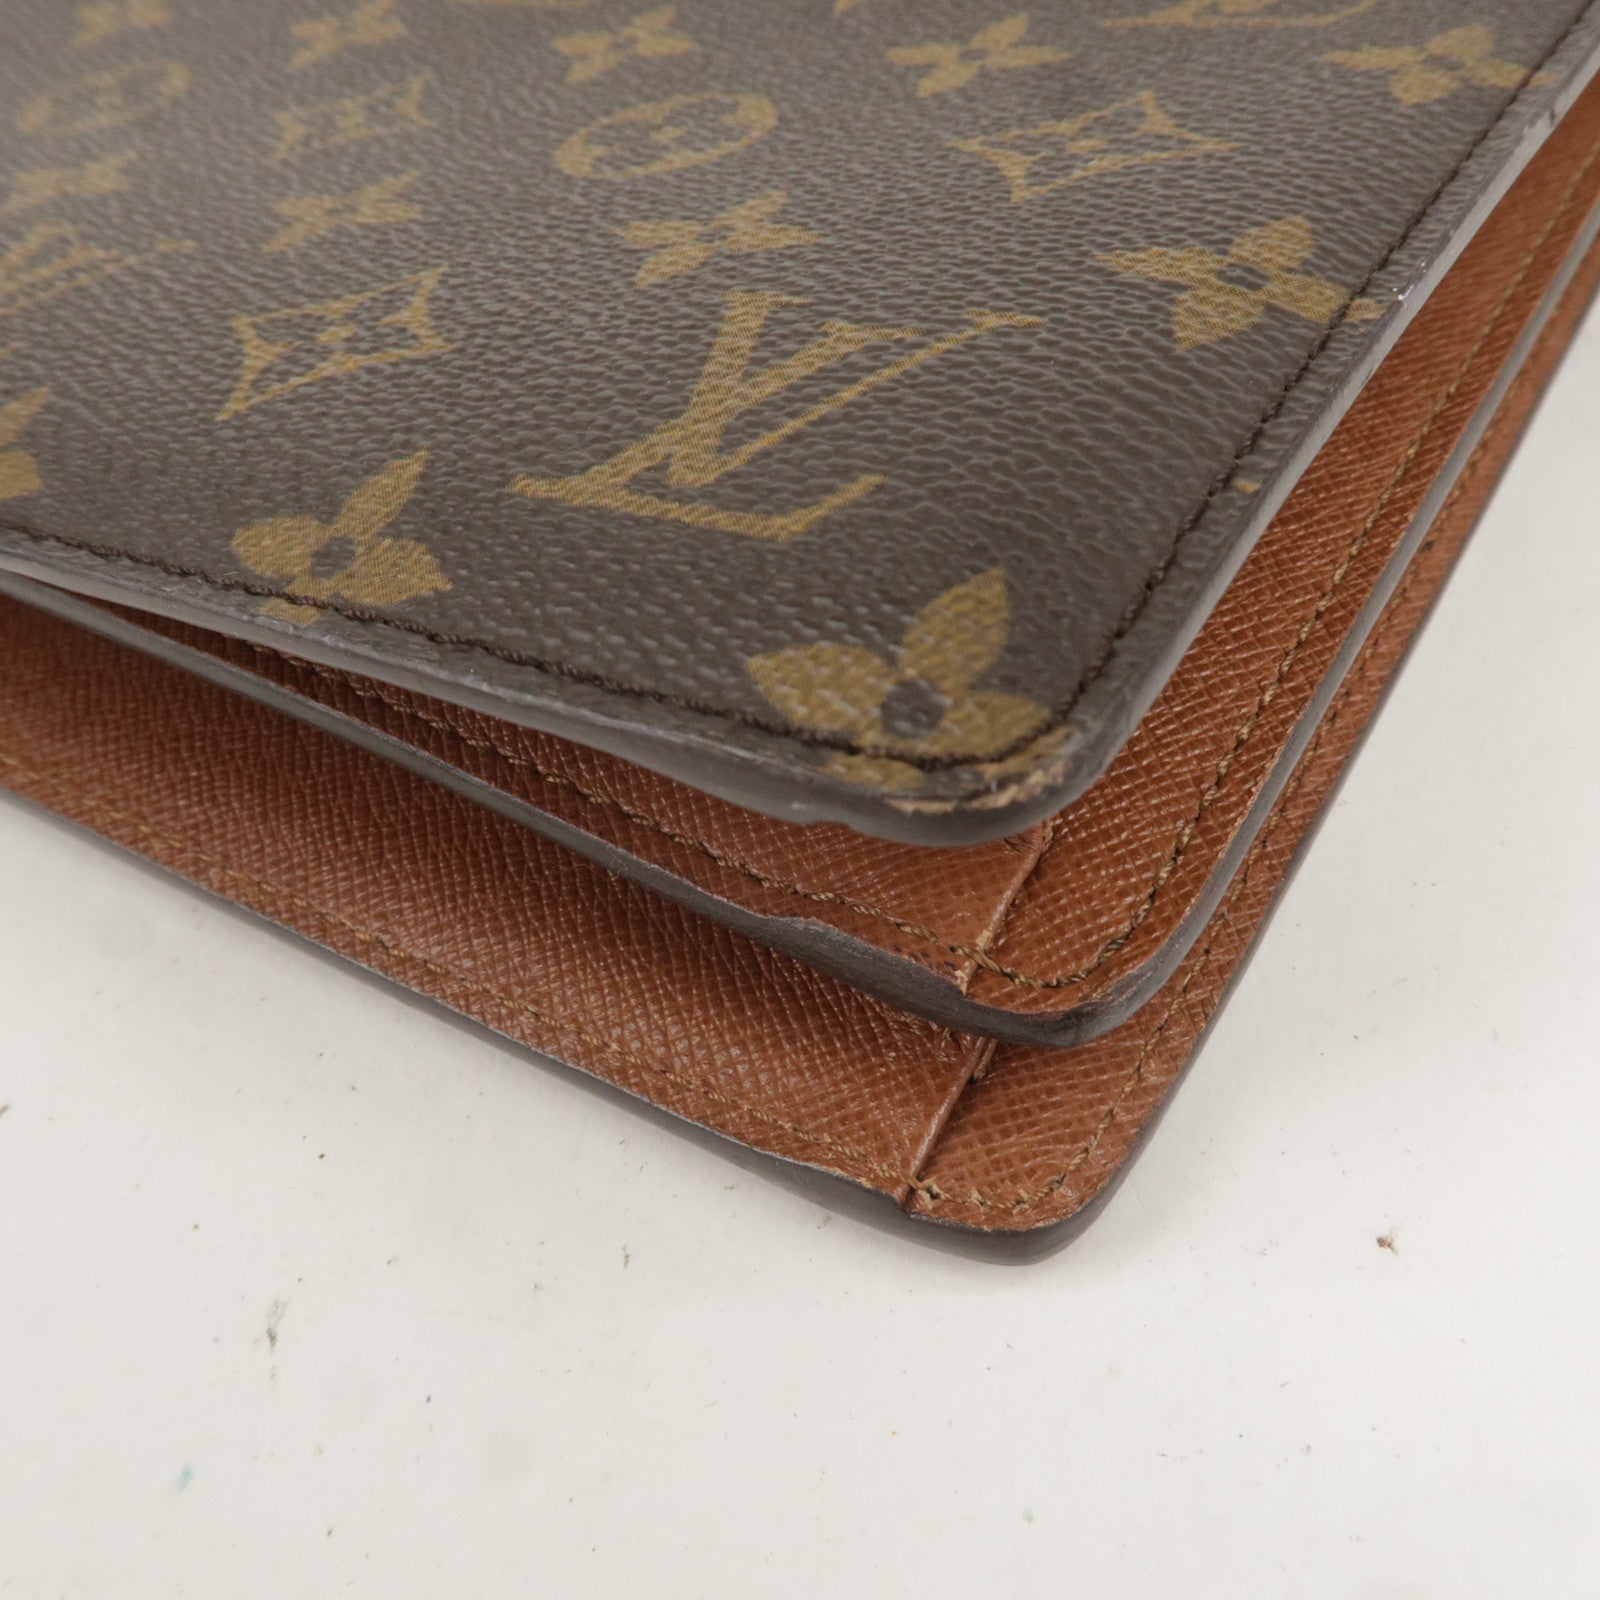 Louis-Vuitton-Monogram-Courcelles-Shoulder-Bag-M51375 – dct